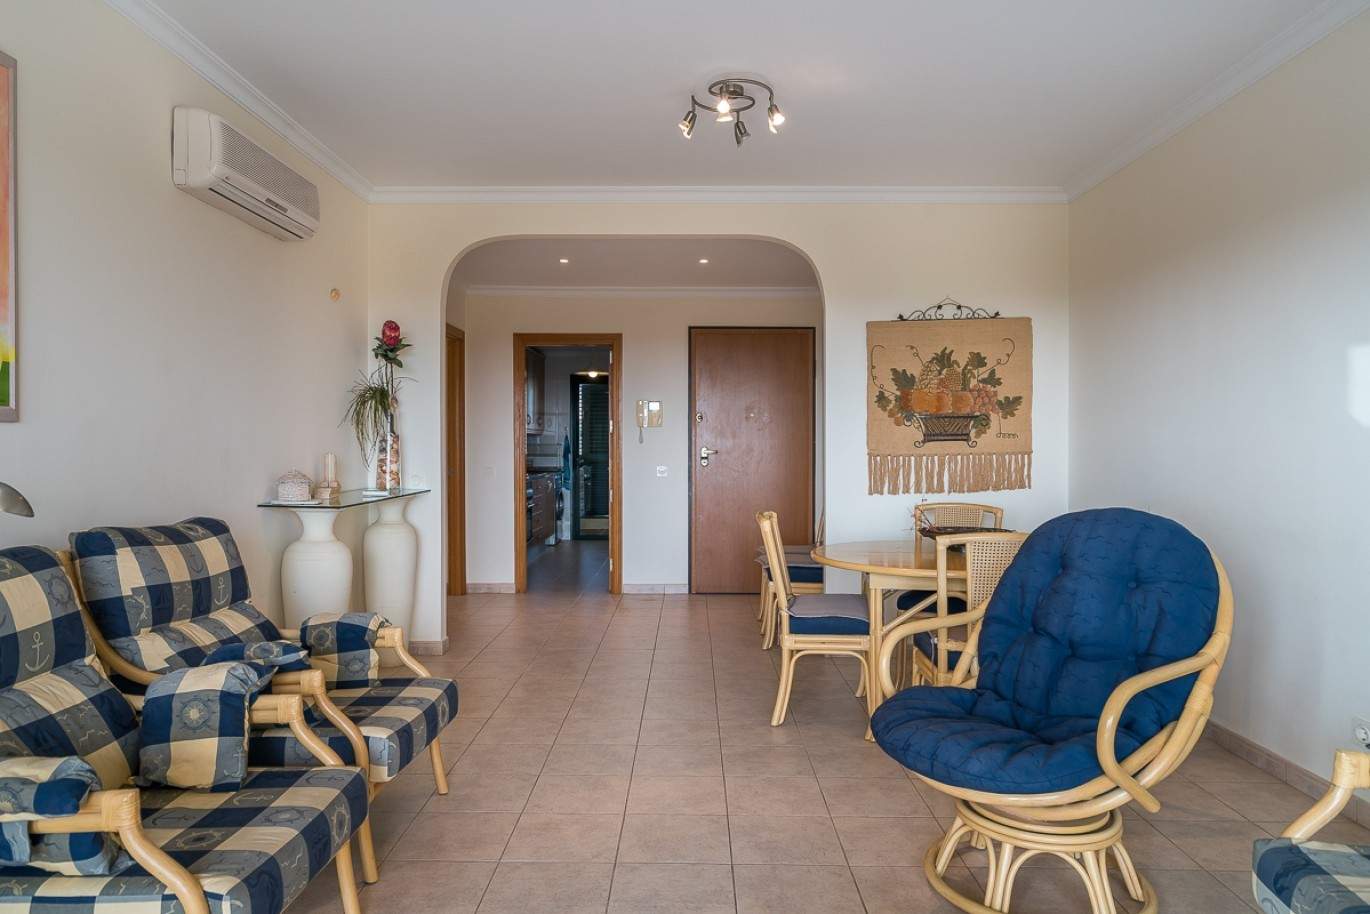 Venda de apartamento com piscina em Vilamoura, Algarve, Portugal_87853